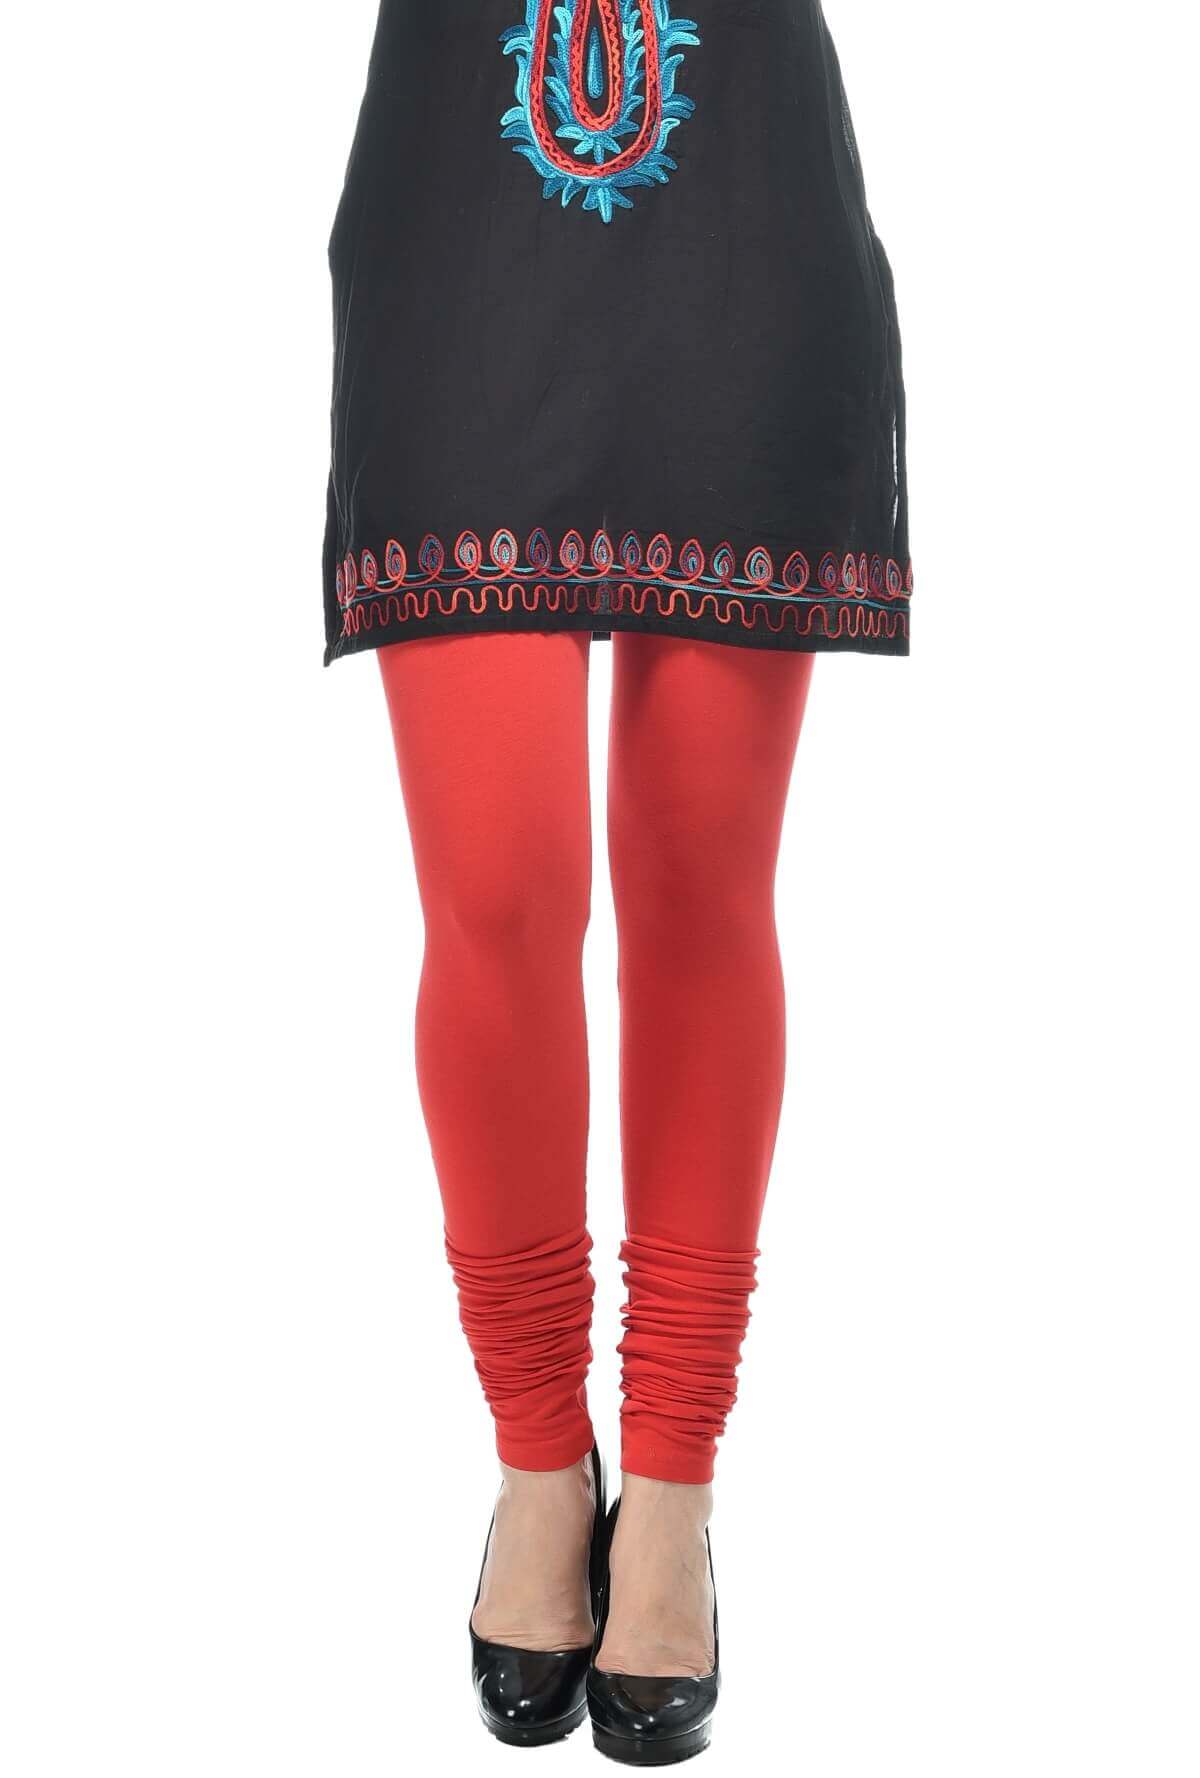 Buy Garnet Red Basic Leggings Online - W for Woman